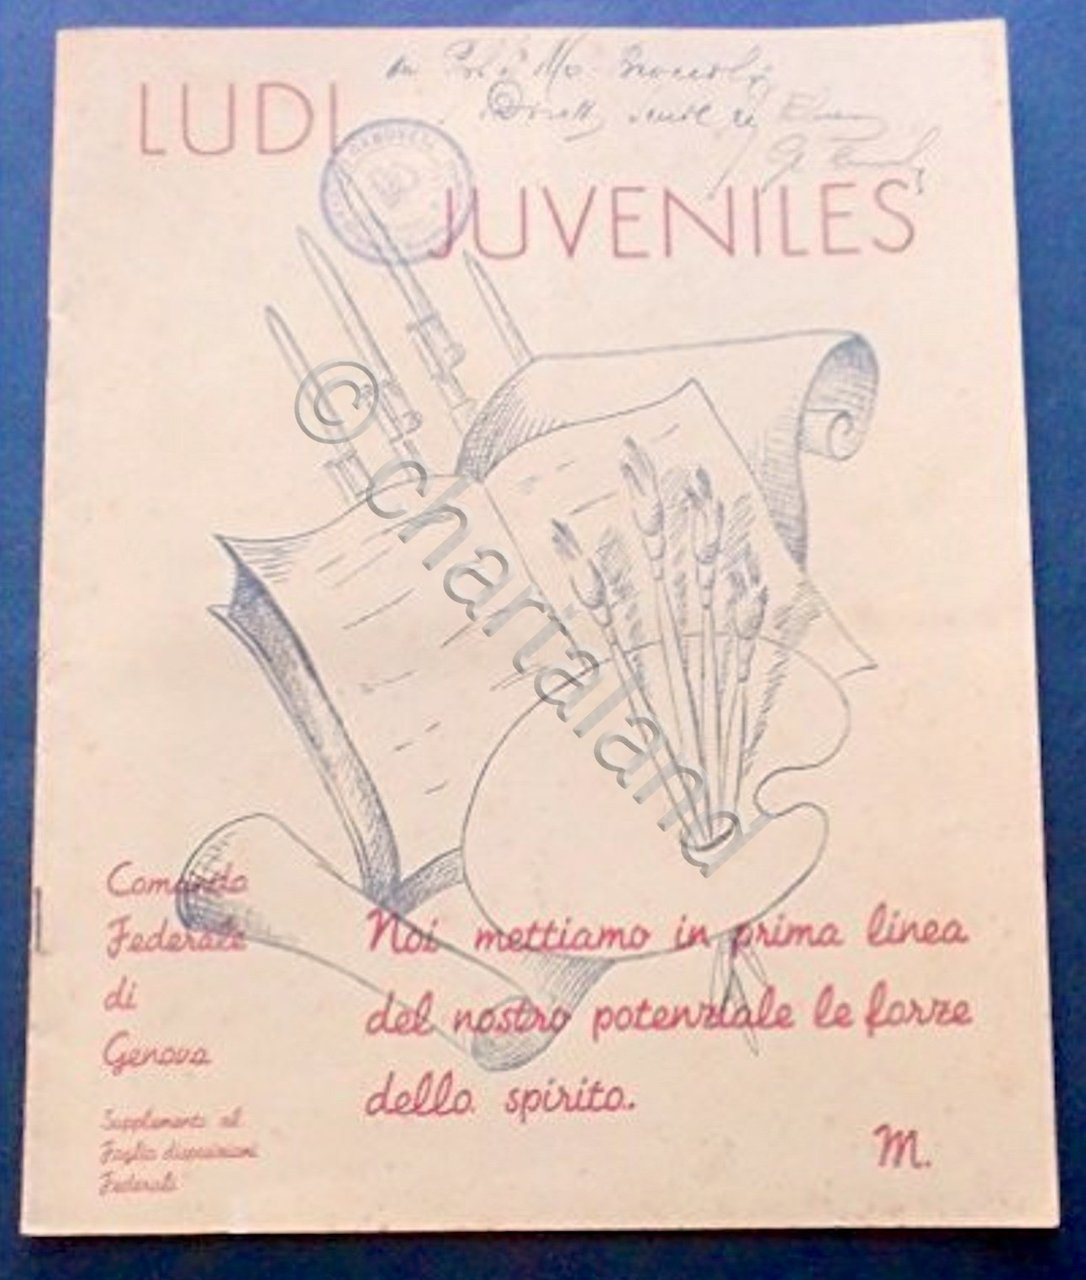 Comando Federale di Genova - Ludi Juveniles - 1941